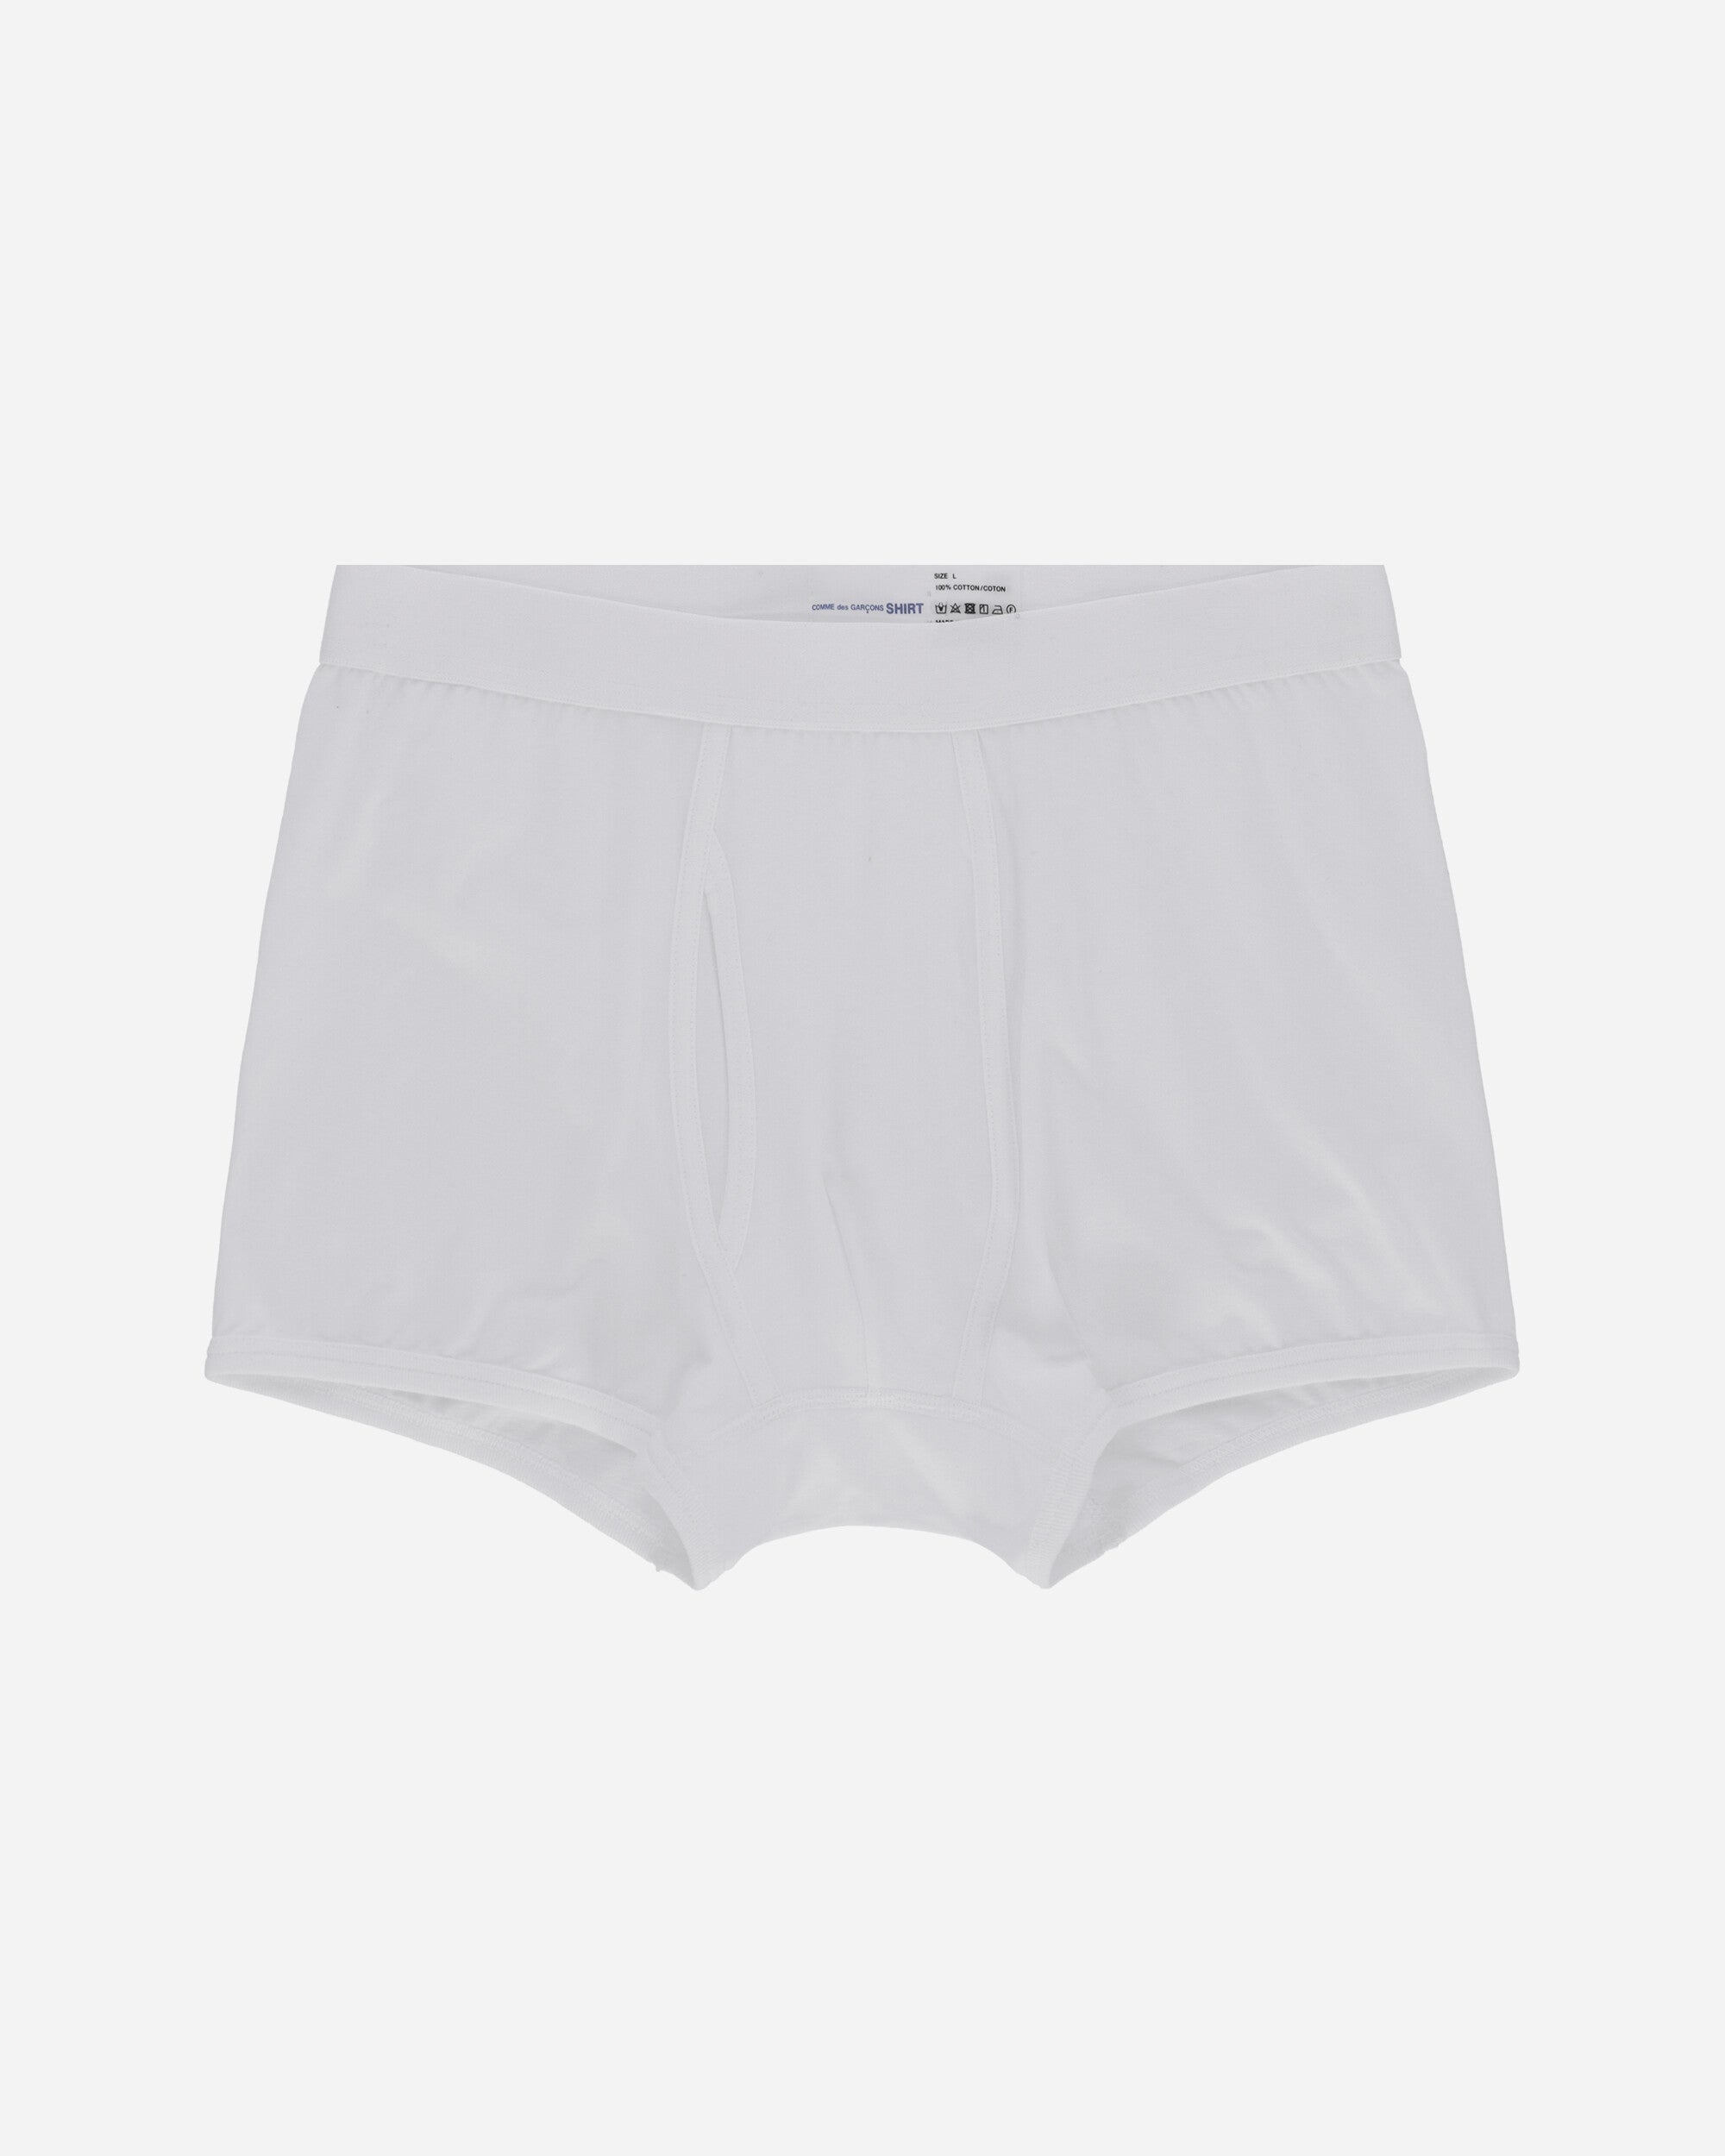 Comme Des Garçons Shirt Cdg Forever Boxer White Underwear Boxers FZ-T913-PER 4